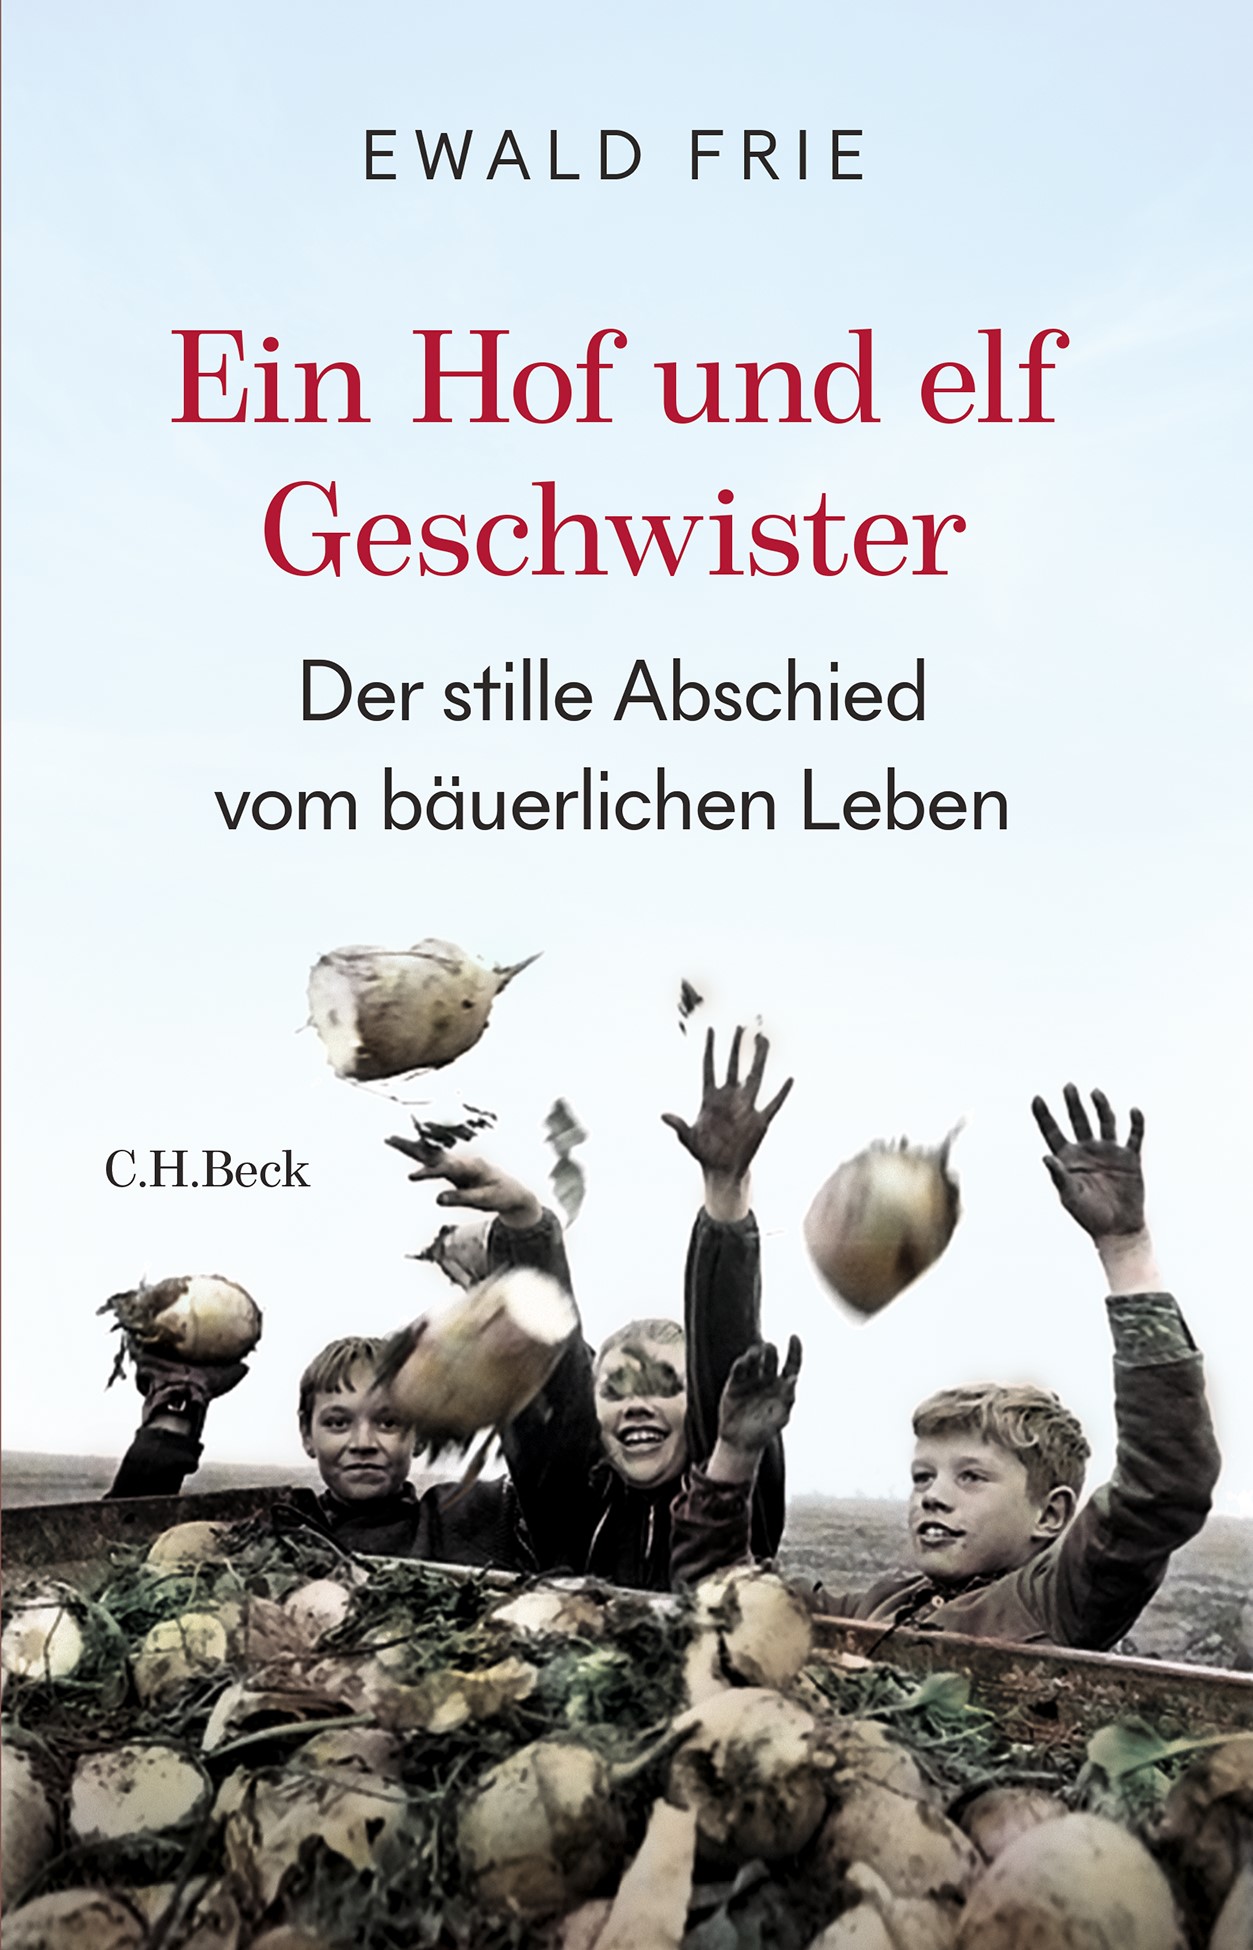 <p style="text-align: center;"><br>"Sein Vater konnte Ferkel kastrieren, Ewald Frie ist Historiker geworden. Er erzählt nun in einem wunderbaren Buch vom Abschied von der bäuerlichen Gesellschaft."<br><em>Johan Schloemann, SZ<br><br></em><strong>Deutscher Sachbuchpreis 2023</strong>